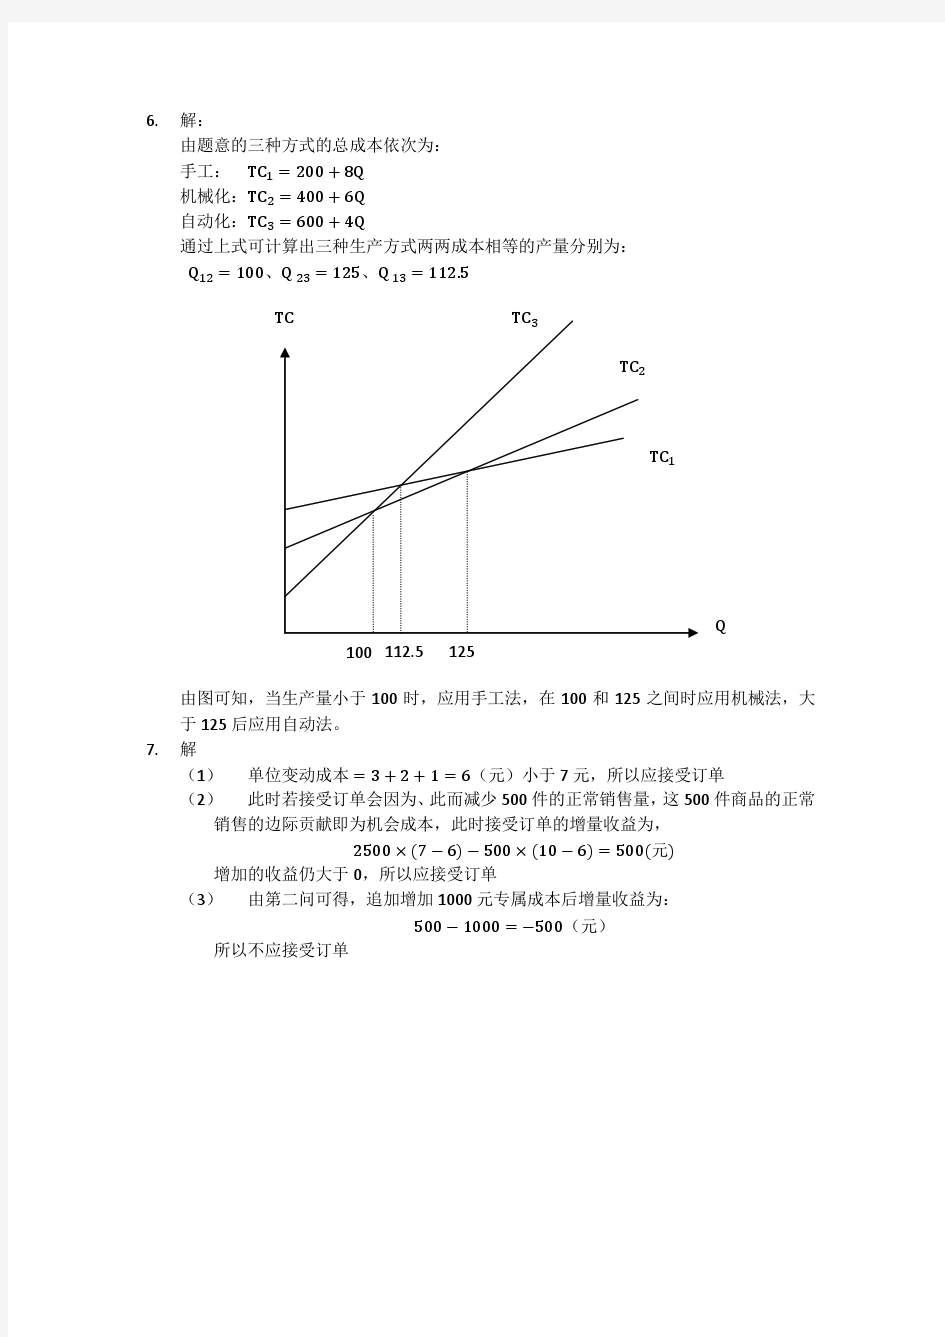 刘运国《管理会计学》教材习题及答案   第六章  习题答案